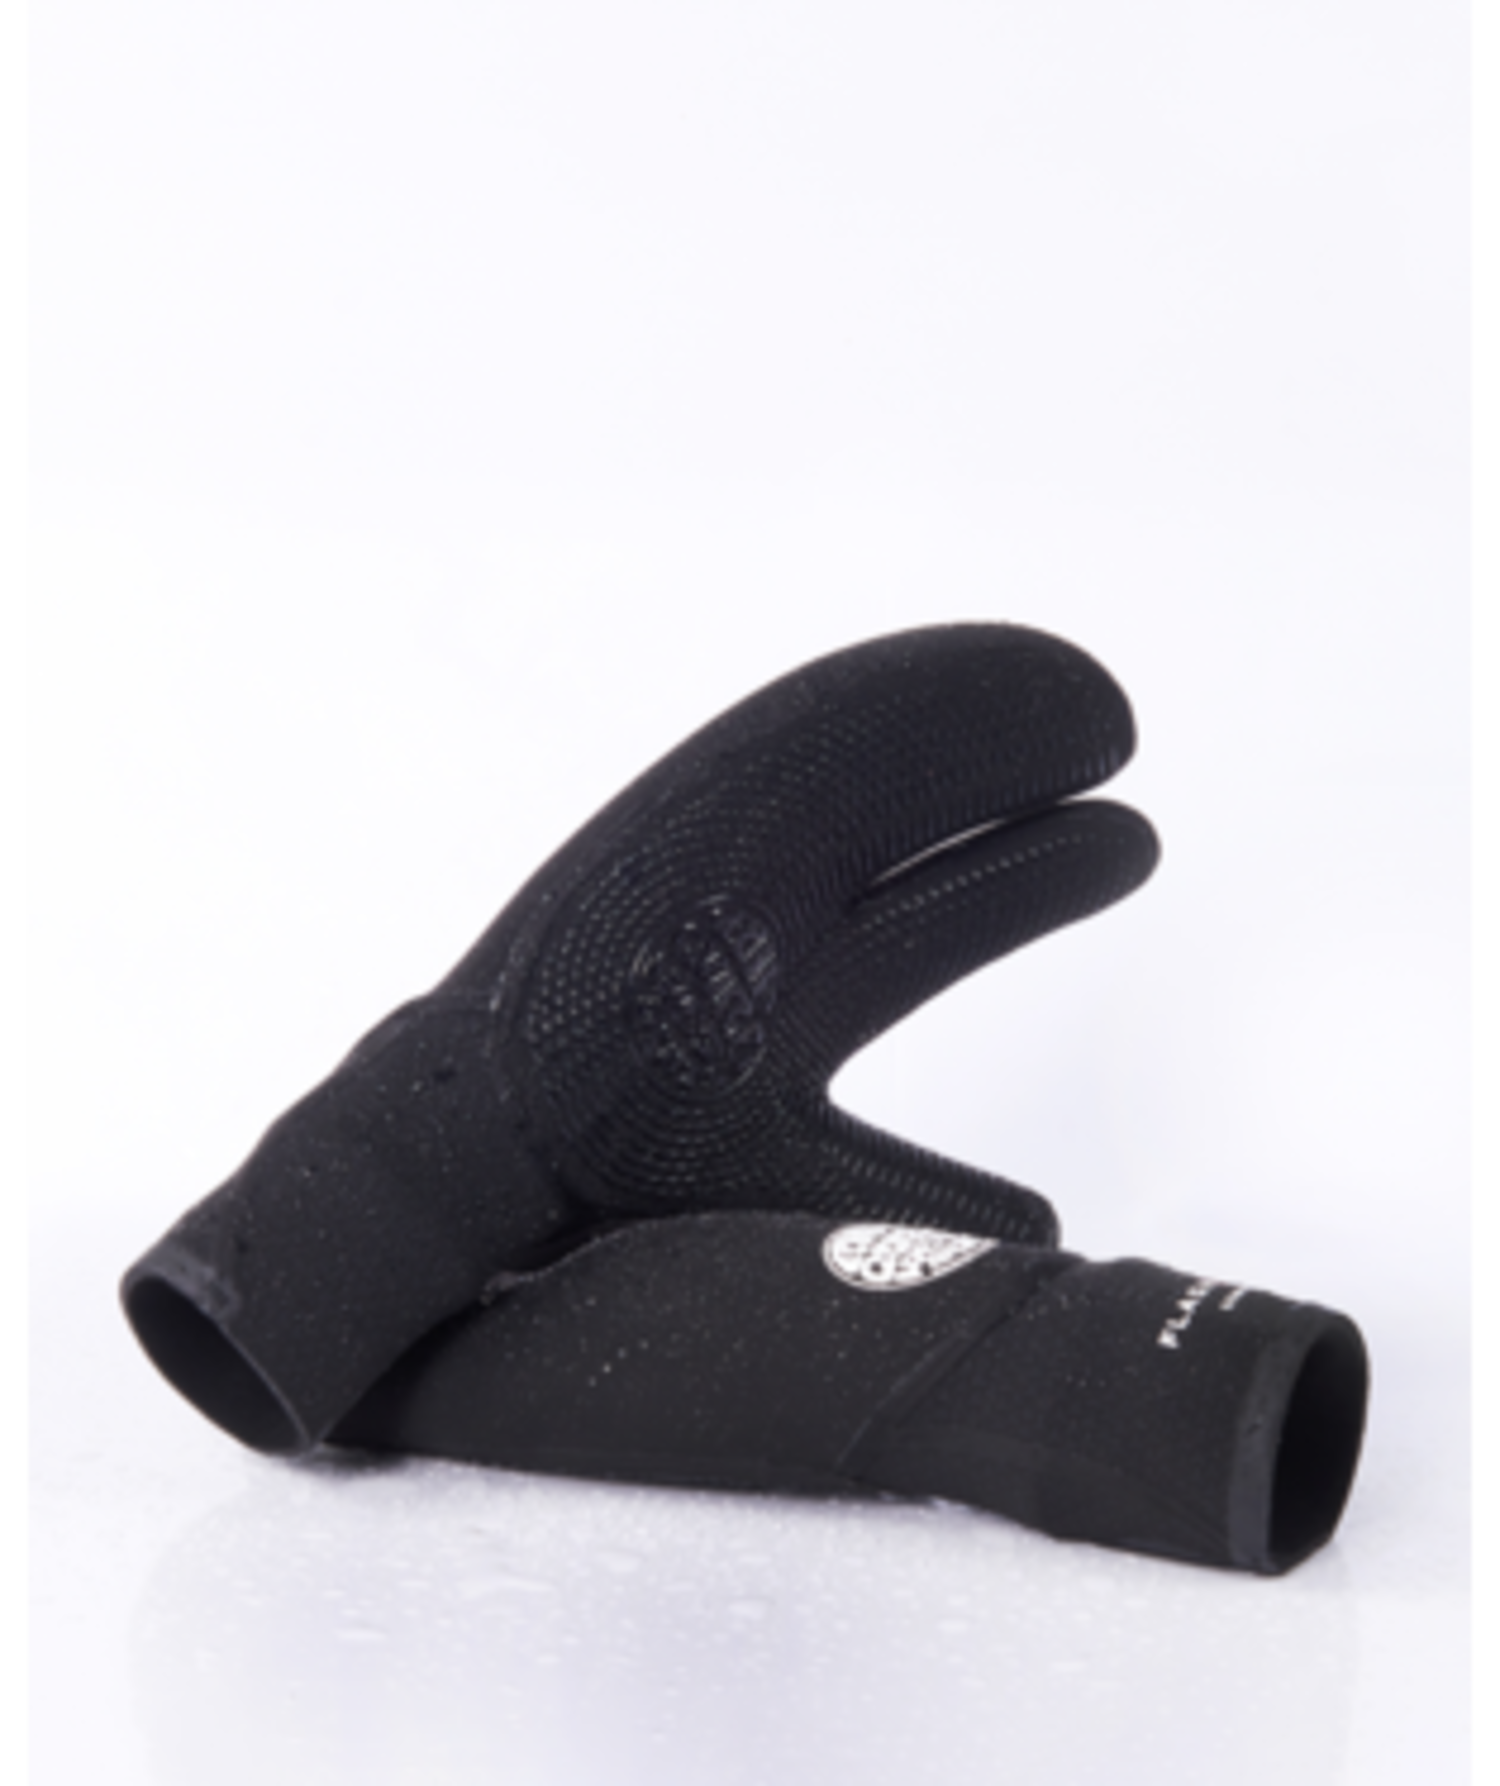 Rip Curl Rip Curl Flashbomb 5/3mm 3 Finger Glove